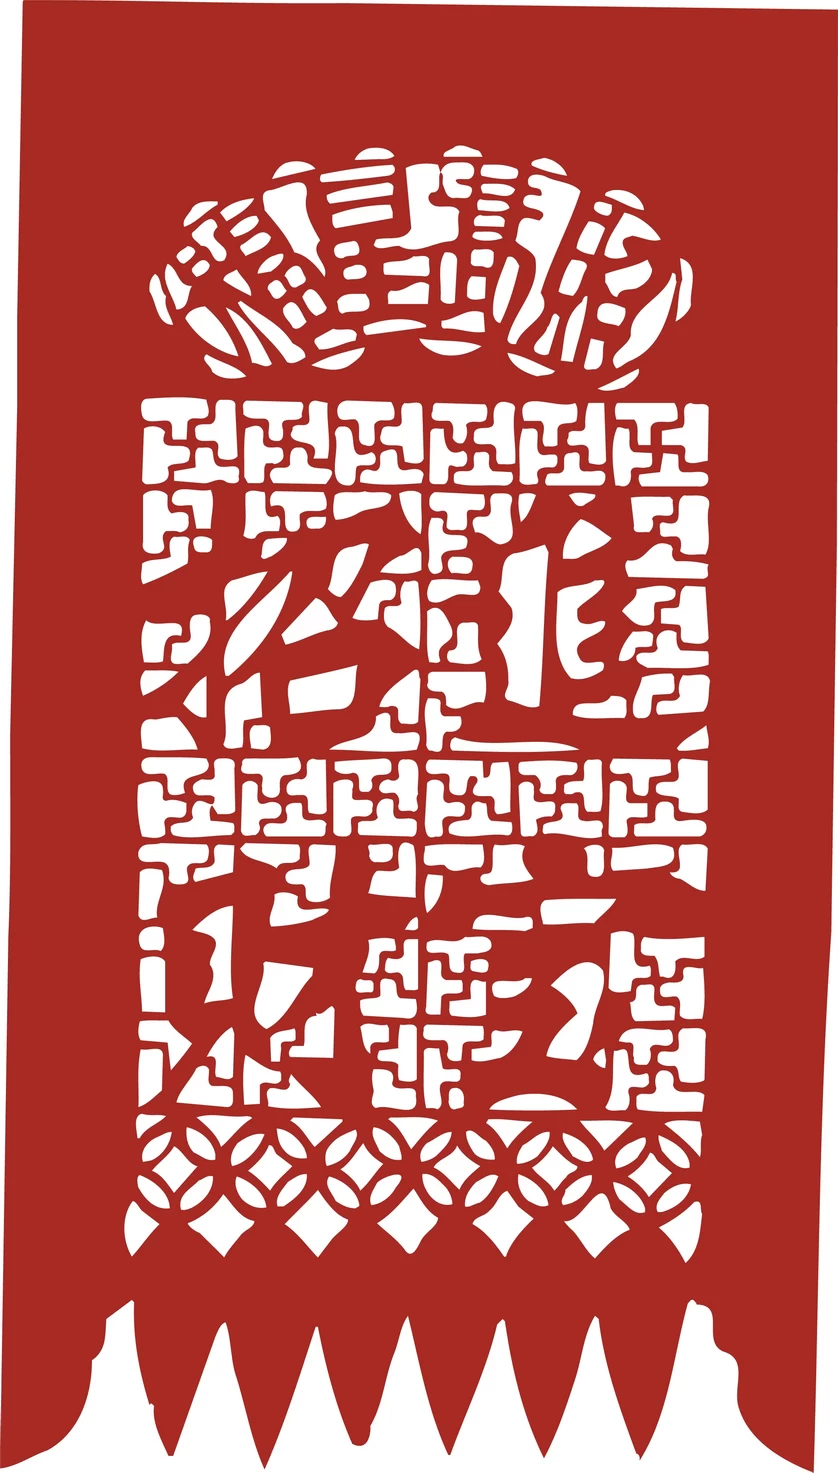 中国风中式传统喜庆民俗人物动物窗花剪纸插画边框AI矢量PNG素材【1955】